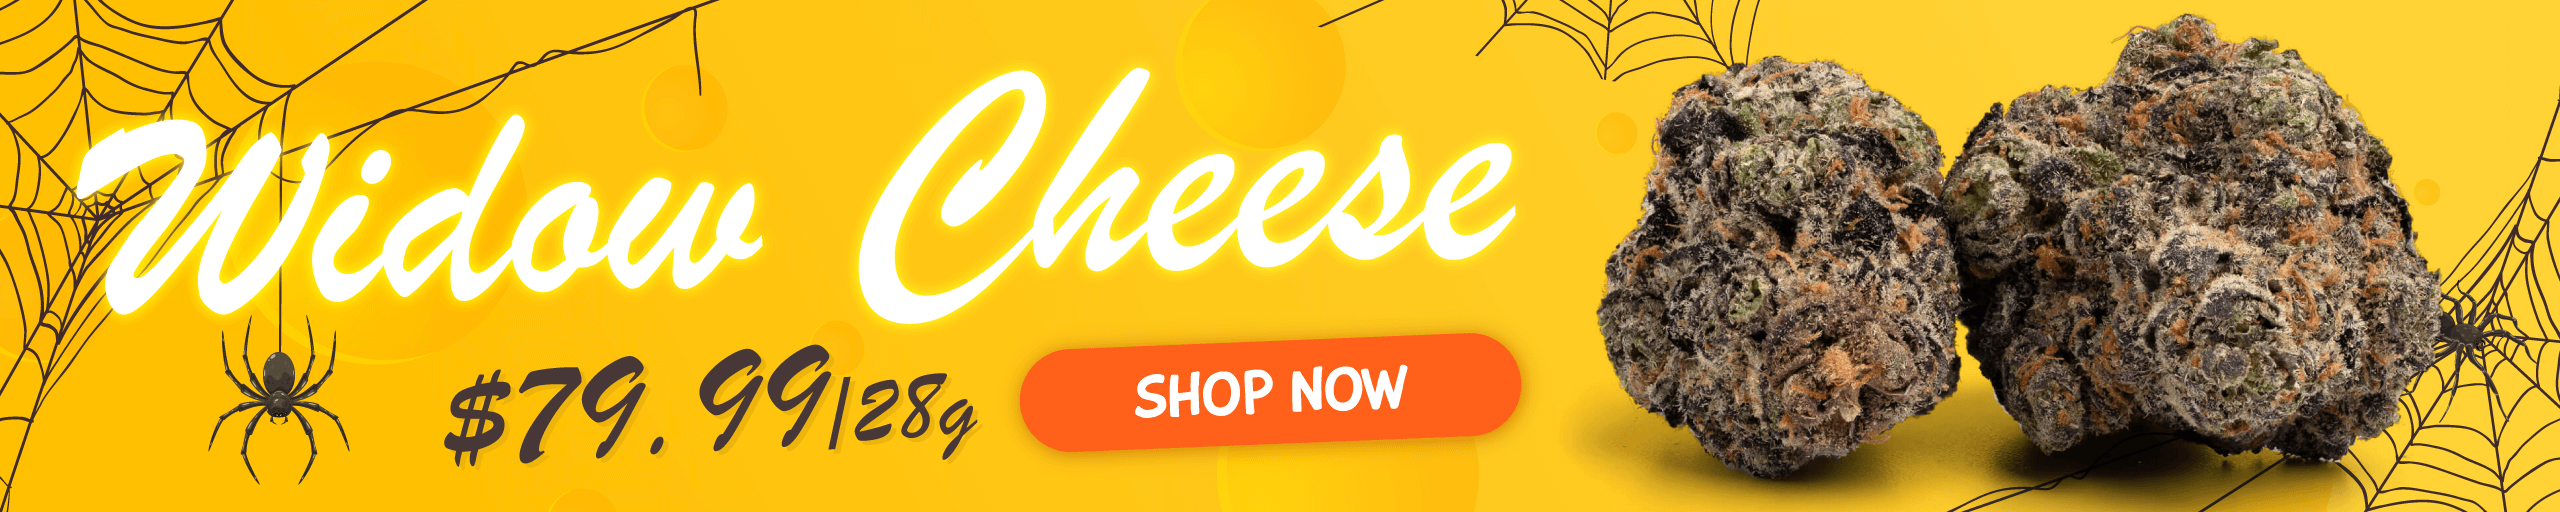 Widow-Cheese_sale